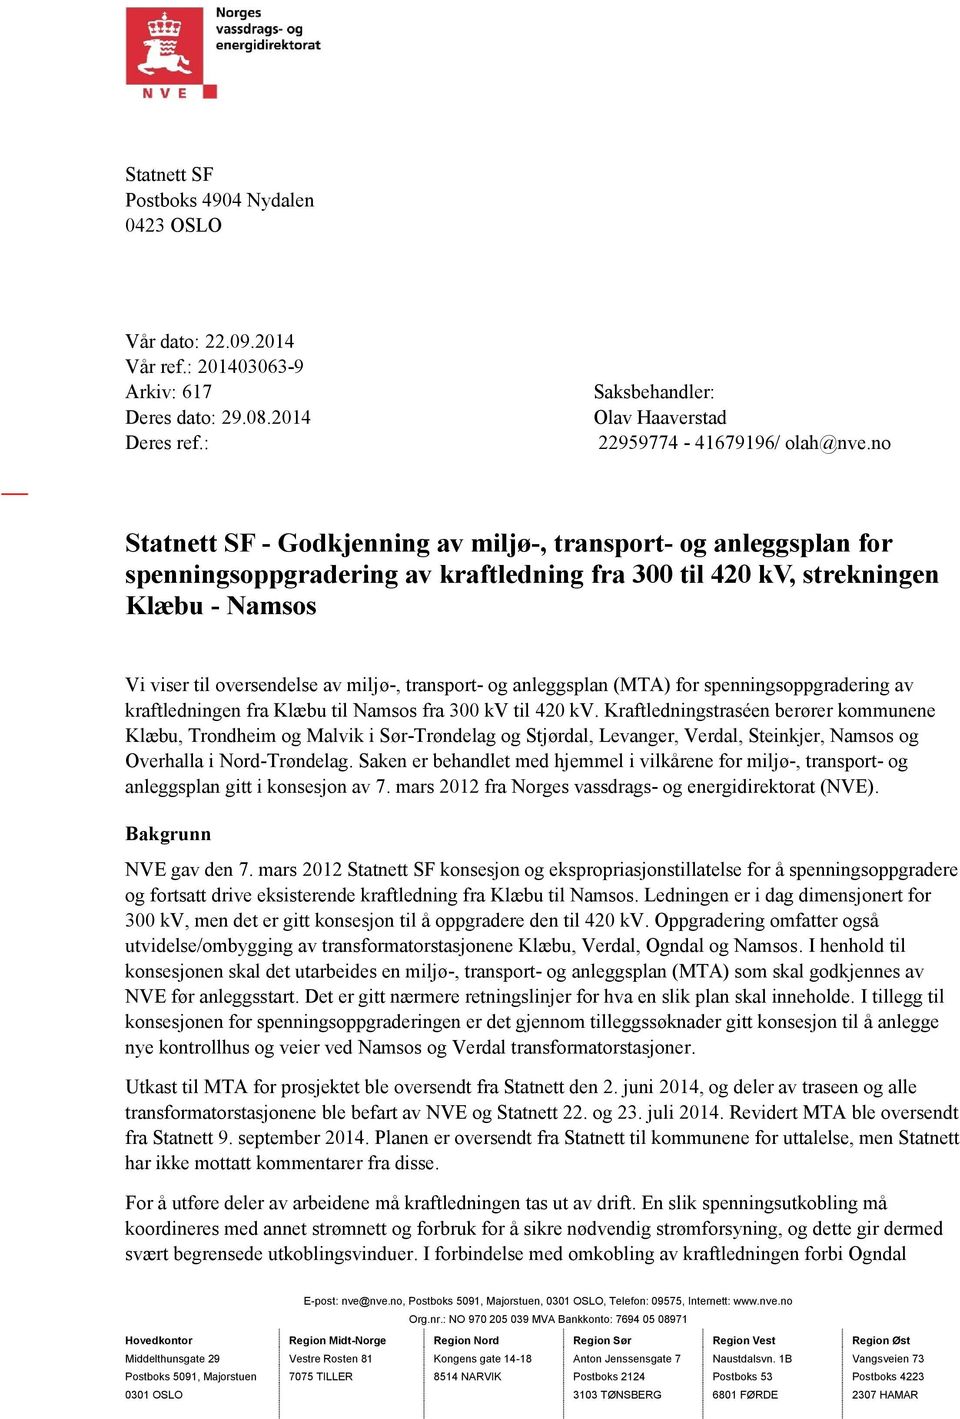 transport- og anleggsplan (MTA) for spenningsoppgradering av kraftledningen fra Klæbu til Namsos fra 300 kv til 420 kv.